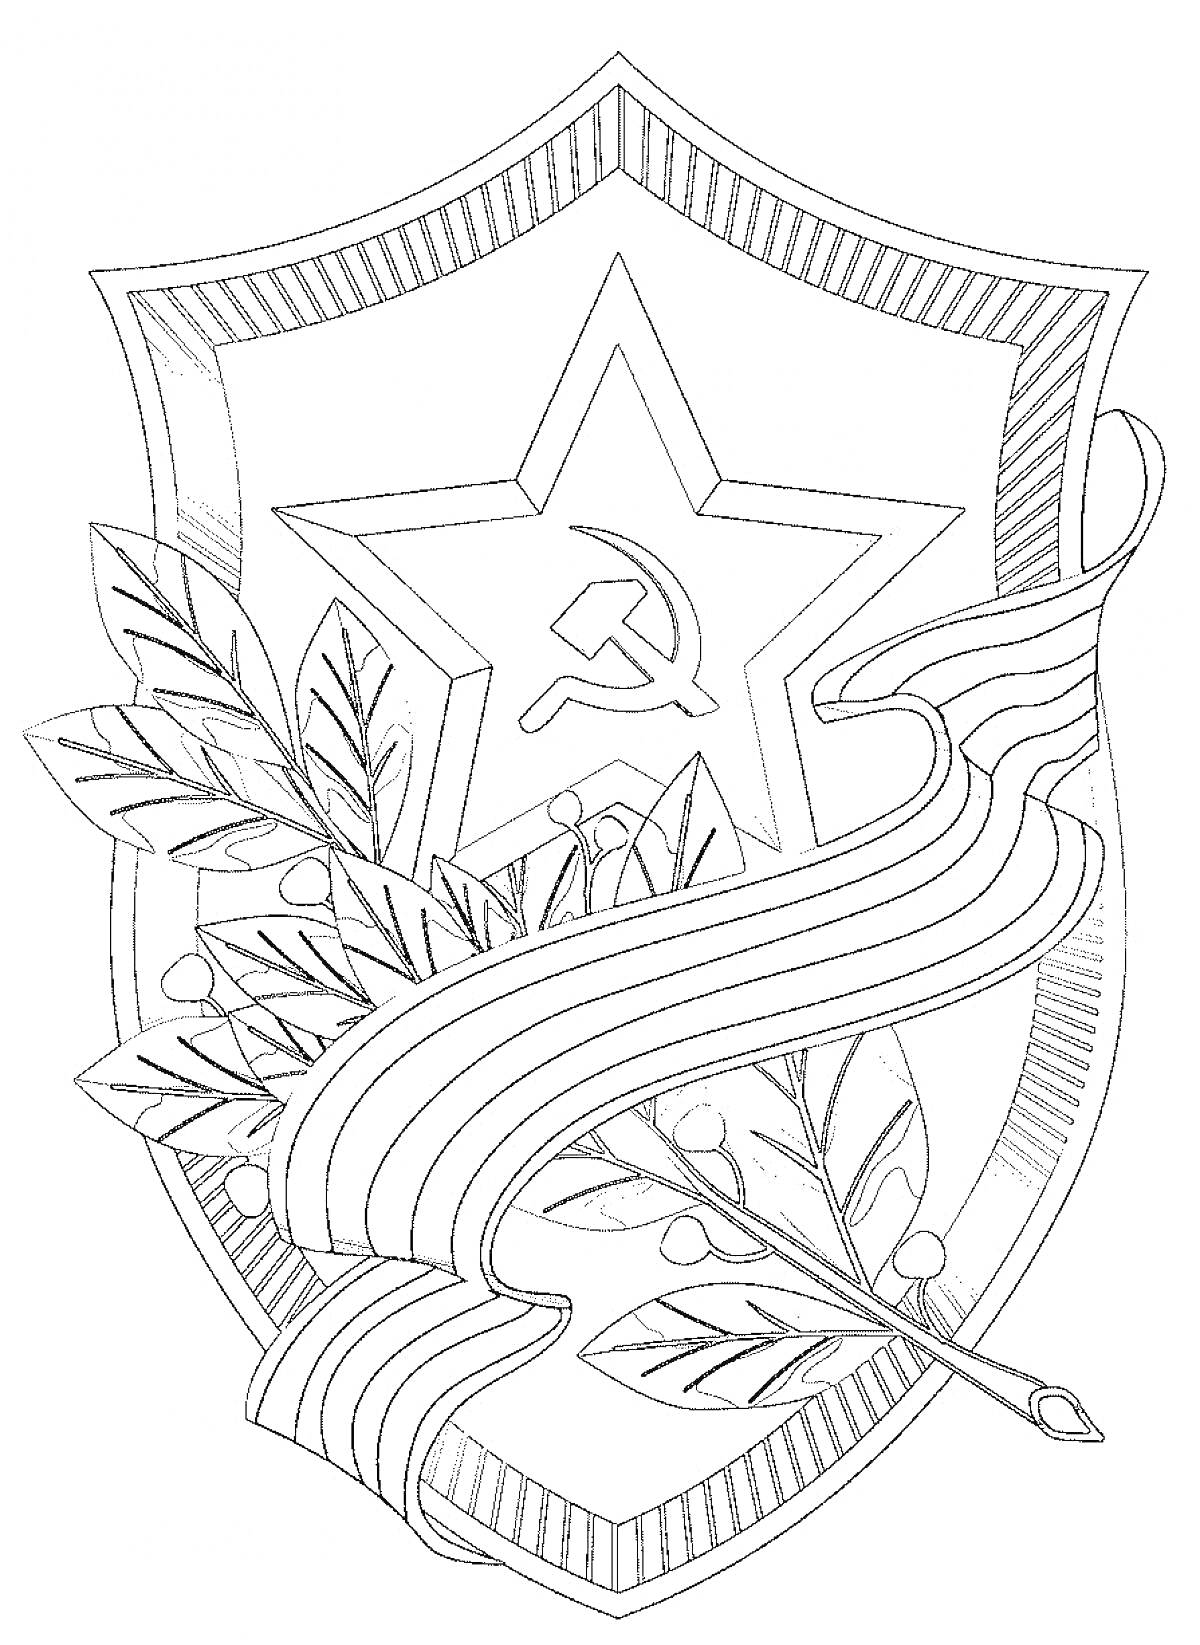 герб со звездой, серпом и молотом, окруженный лавровыми ветвями и лентой